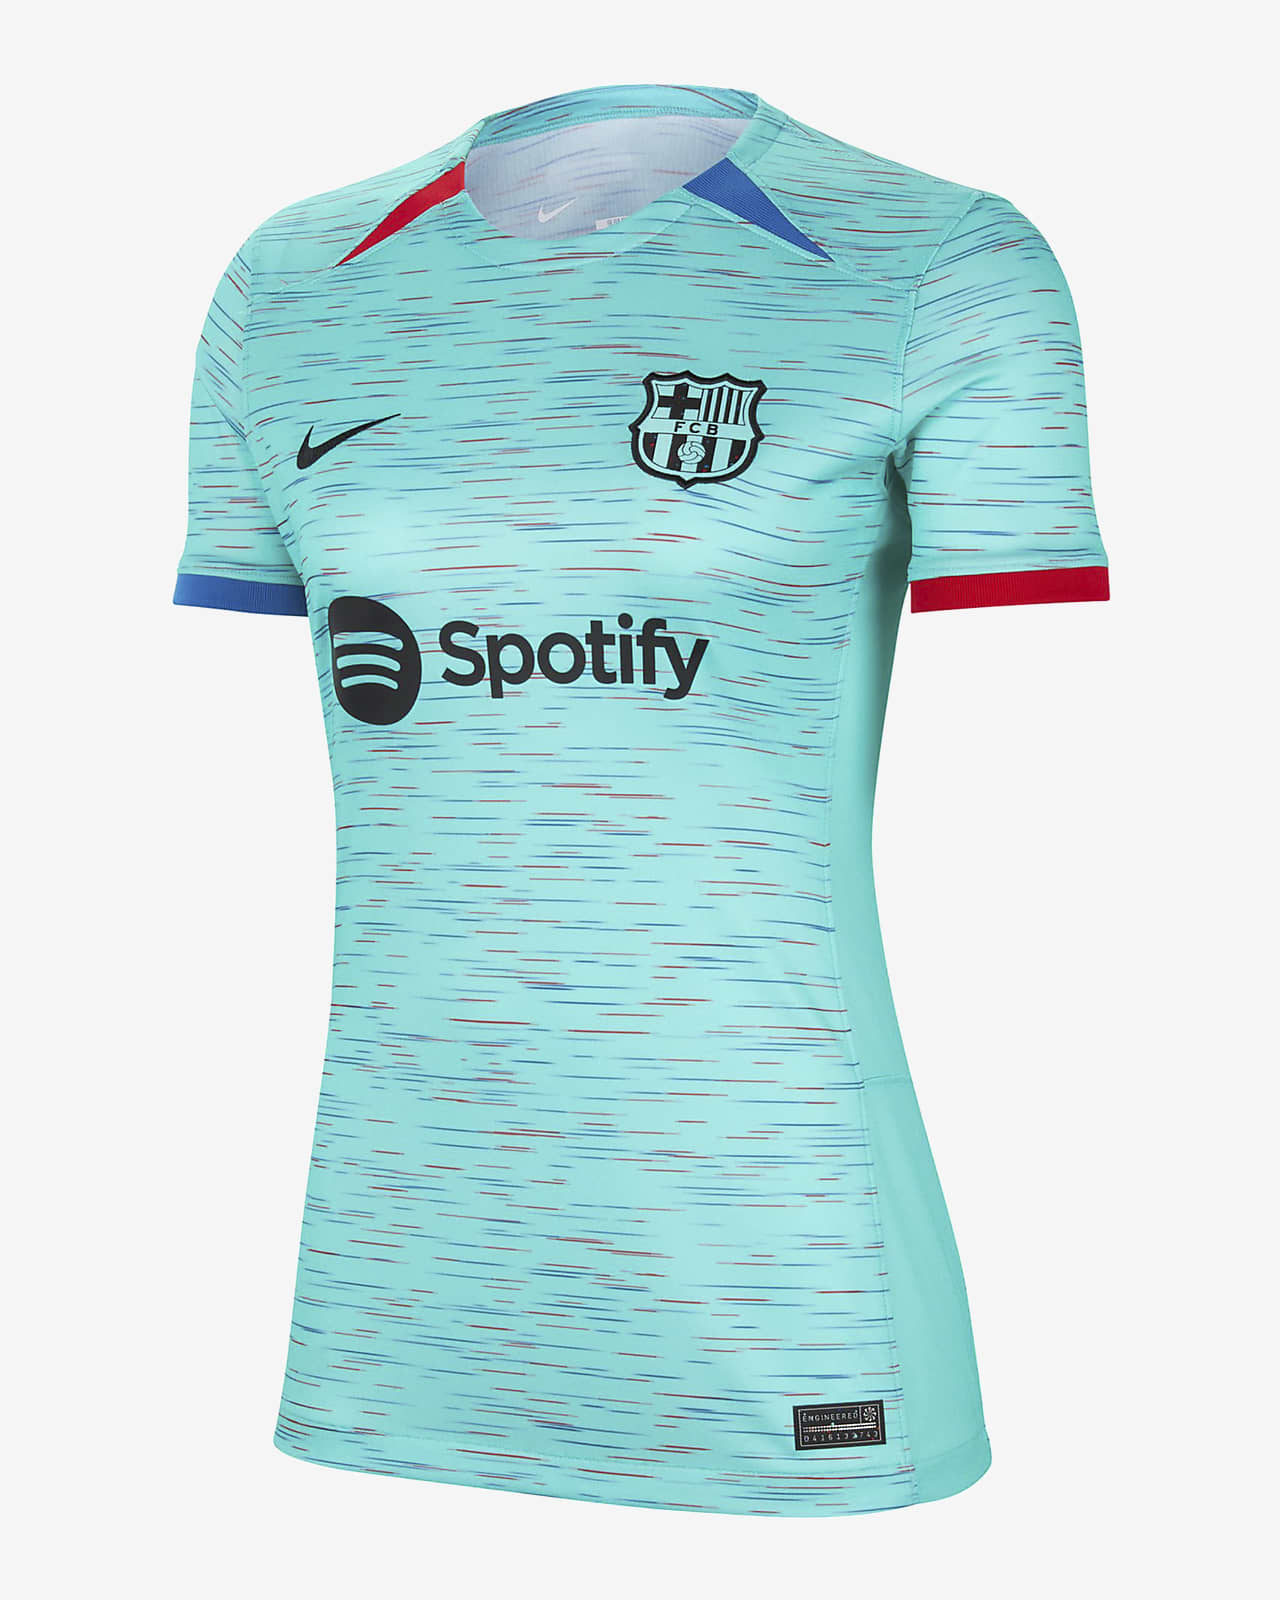 FC Barcelona Phoenix Fleece Women's Nike Soccer Oversized Pullover Hoodie.